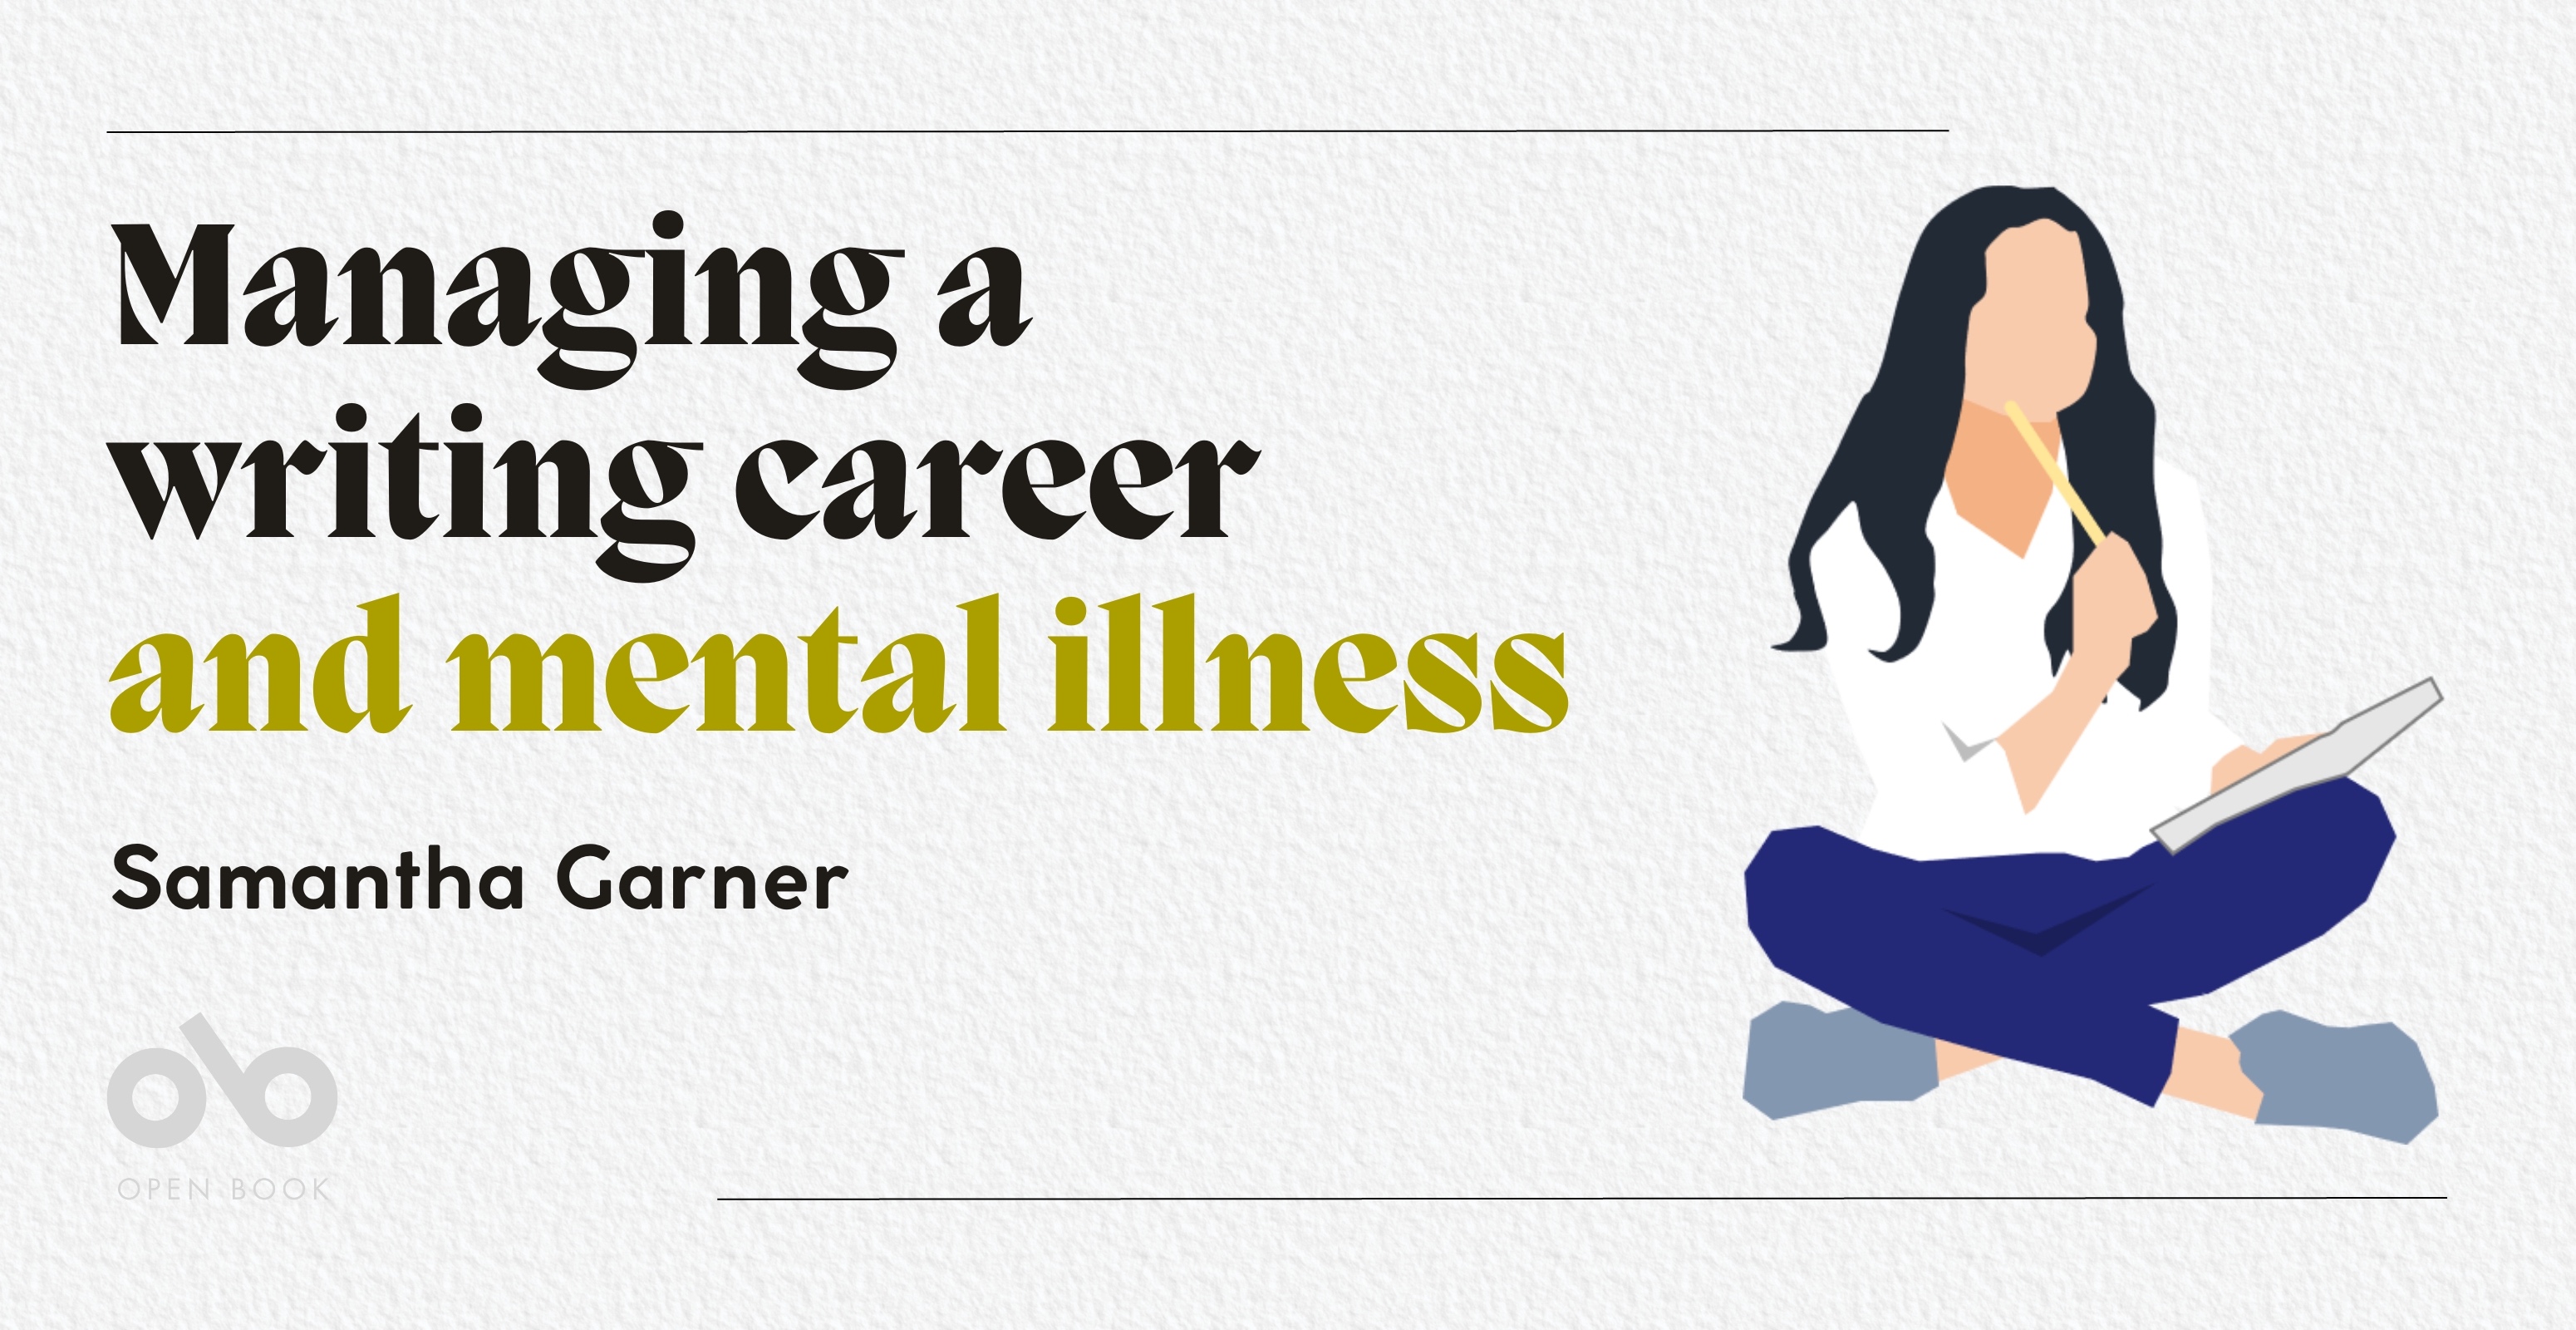 Managing a writing career and mental illness - Samantha Garner